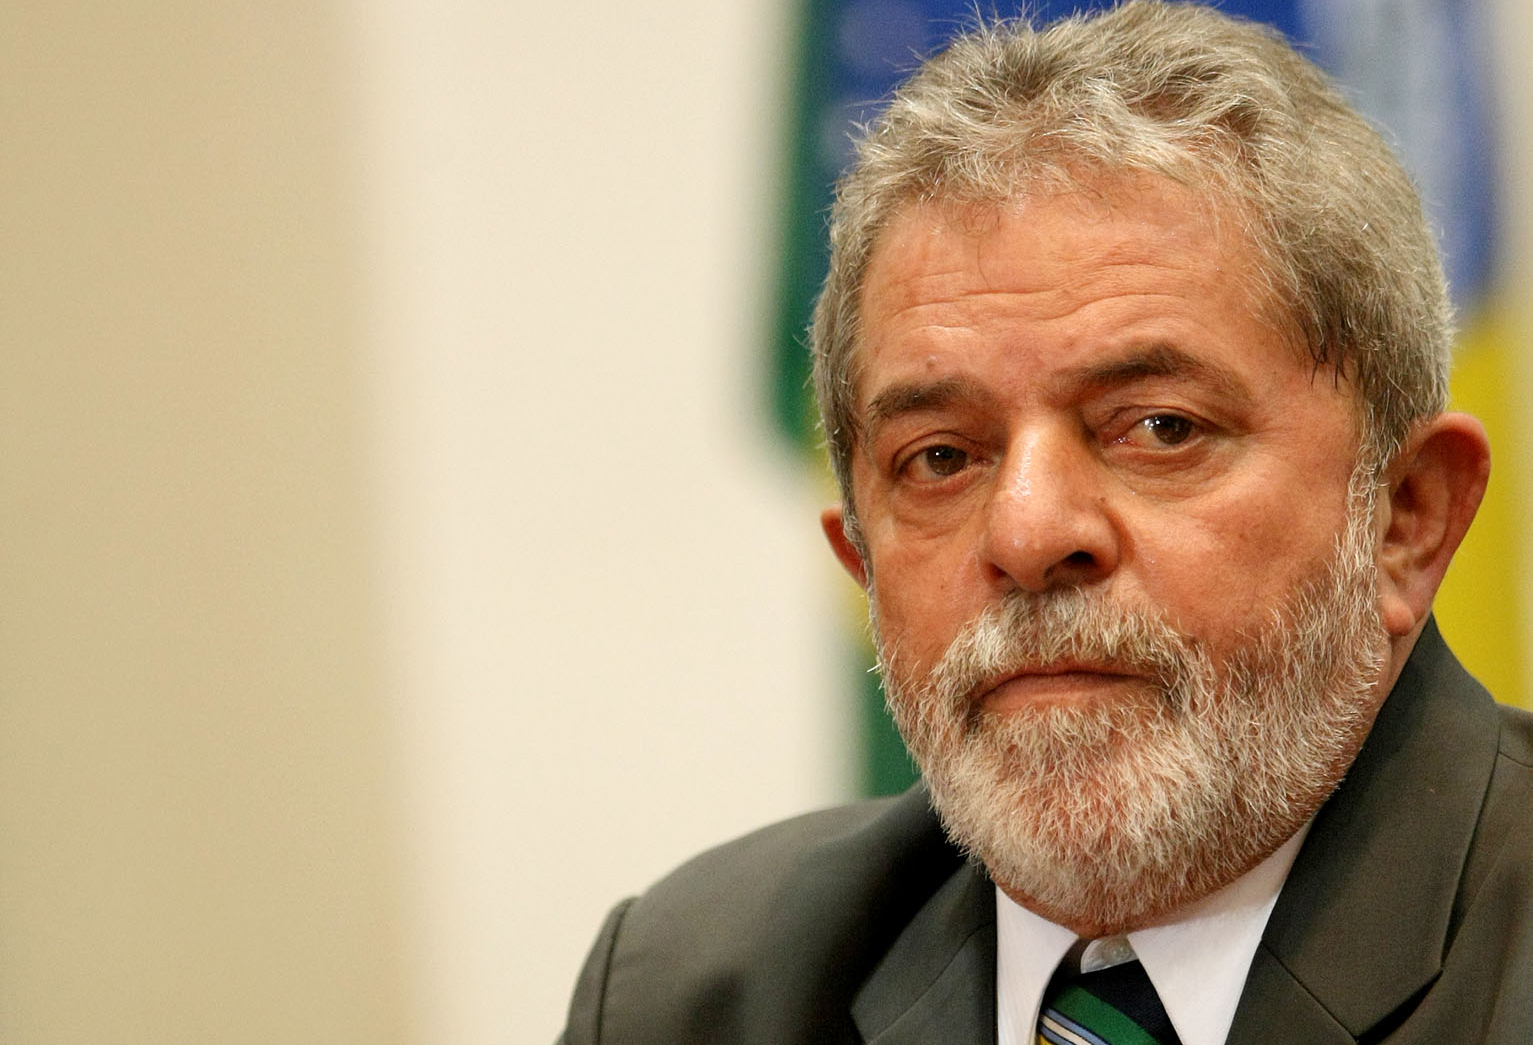 VEJA VÍDEO: Lula vai à TV contra golpismo tucano